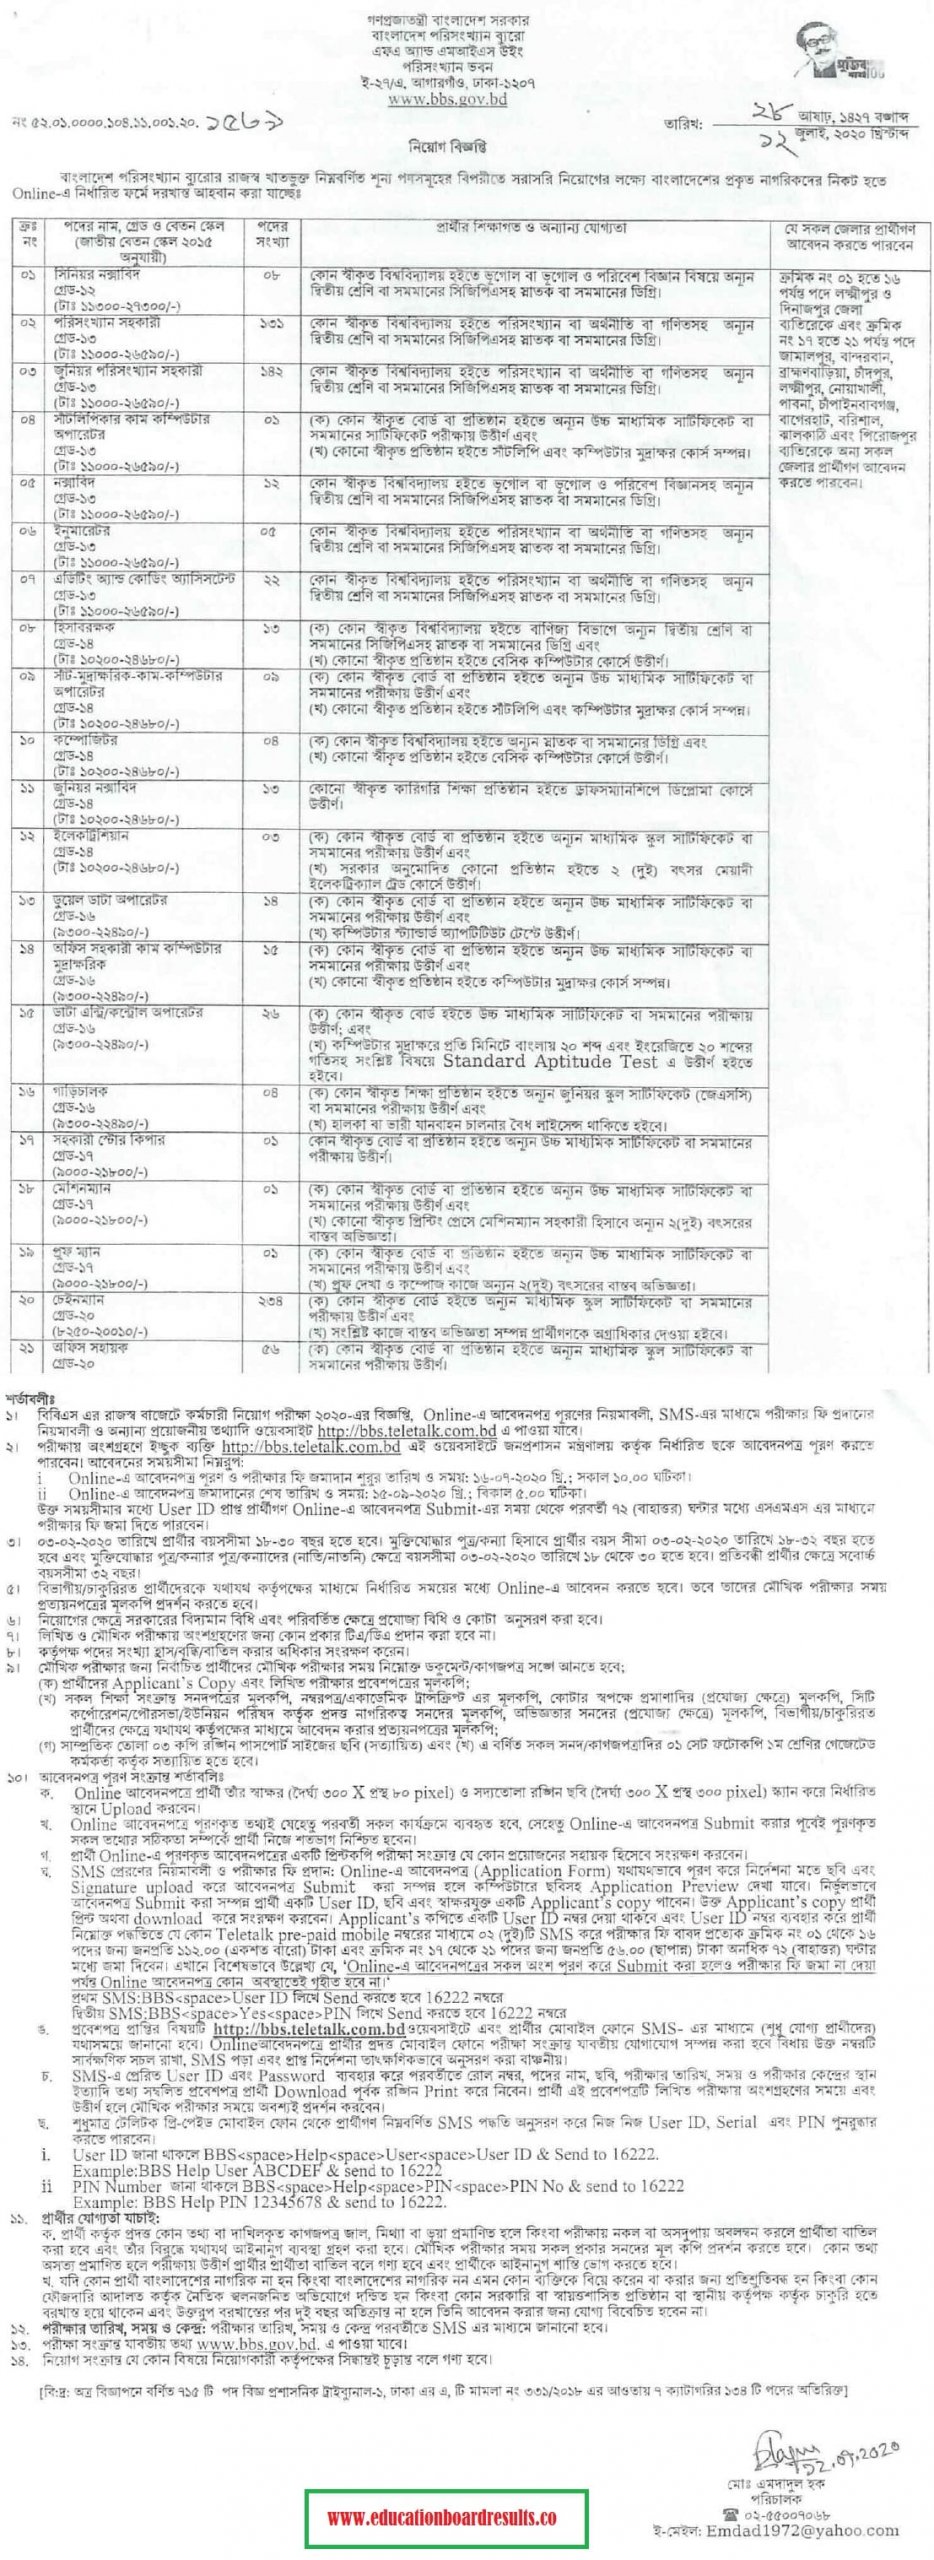 Bangladesh Bureau of Statistics Job Circular 2020